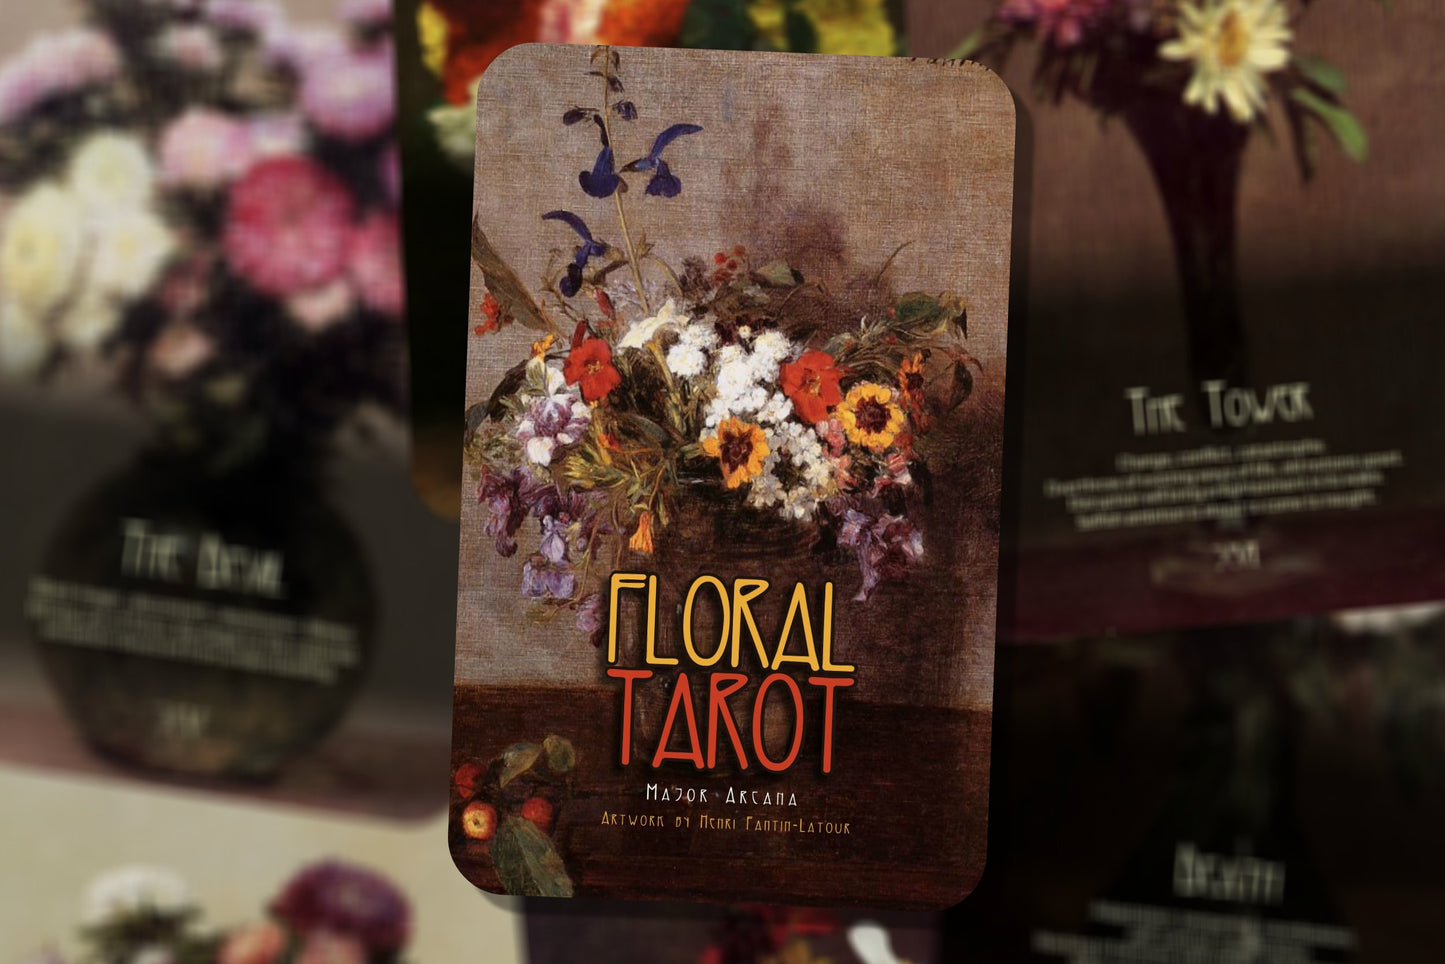 Floral Tarot - Major Arcana - Henri Fantin-Latour art